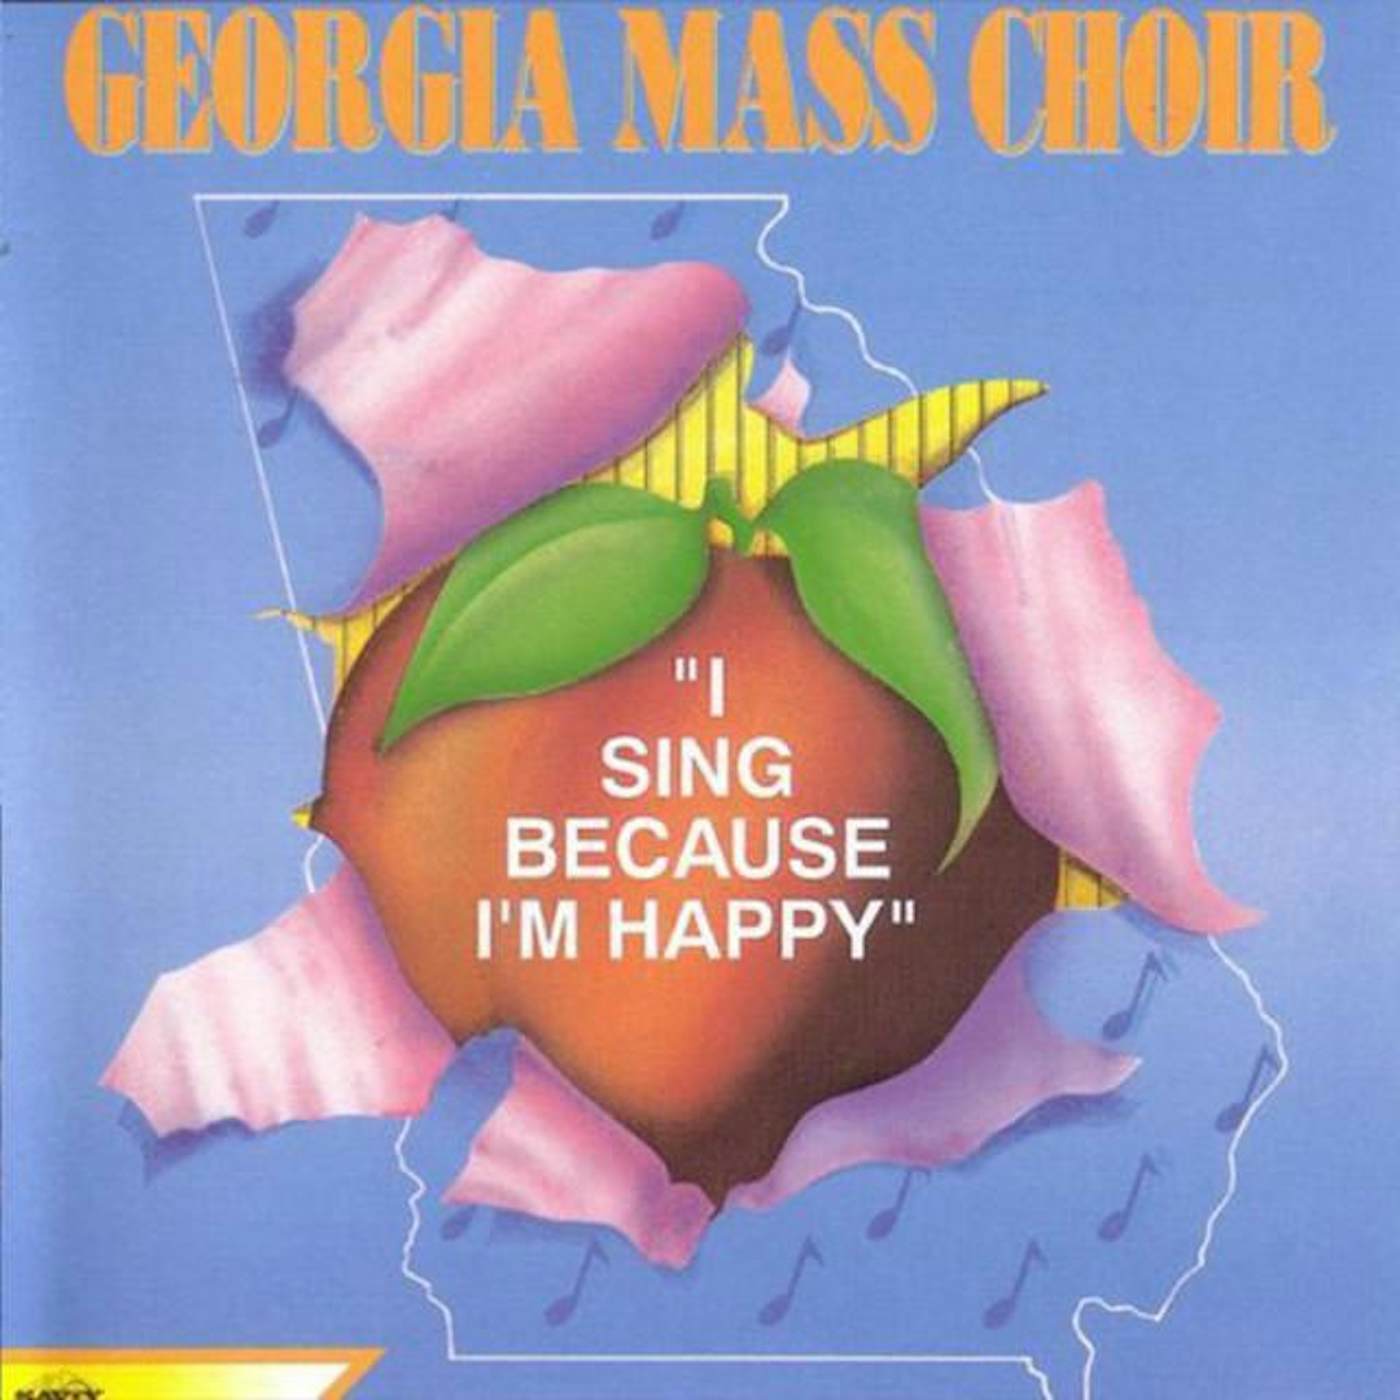 The Georgia Mass Choir